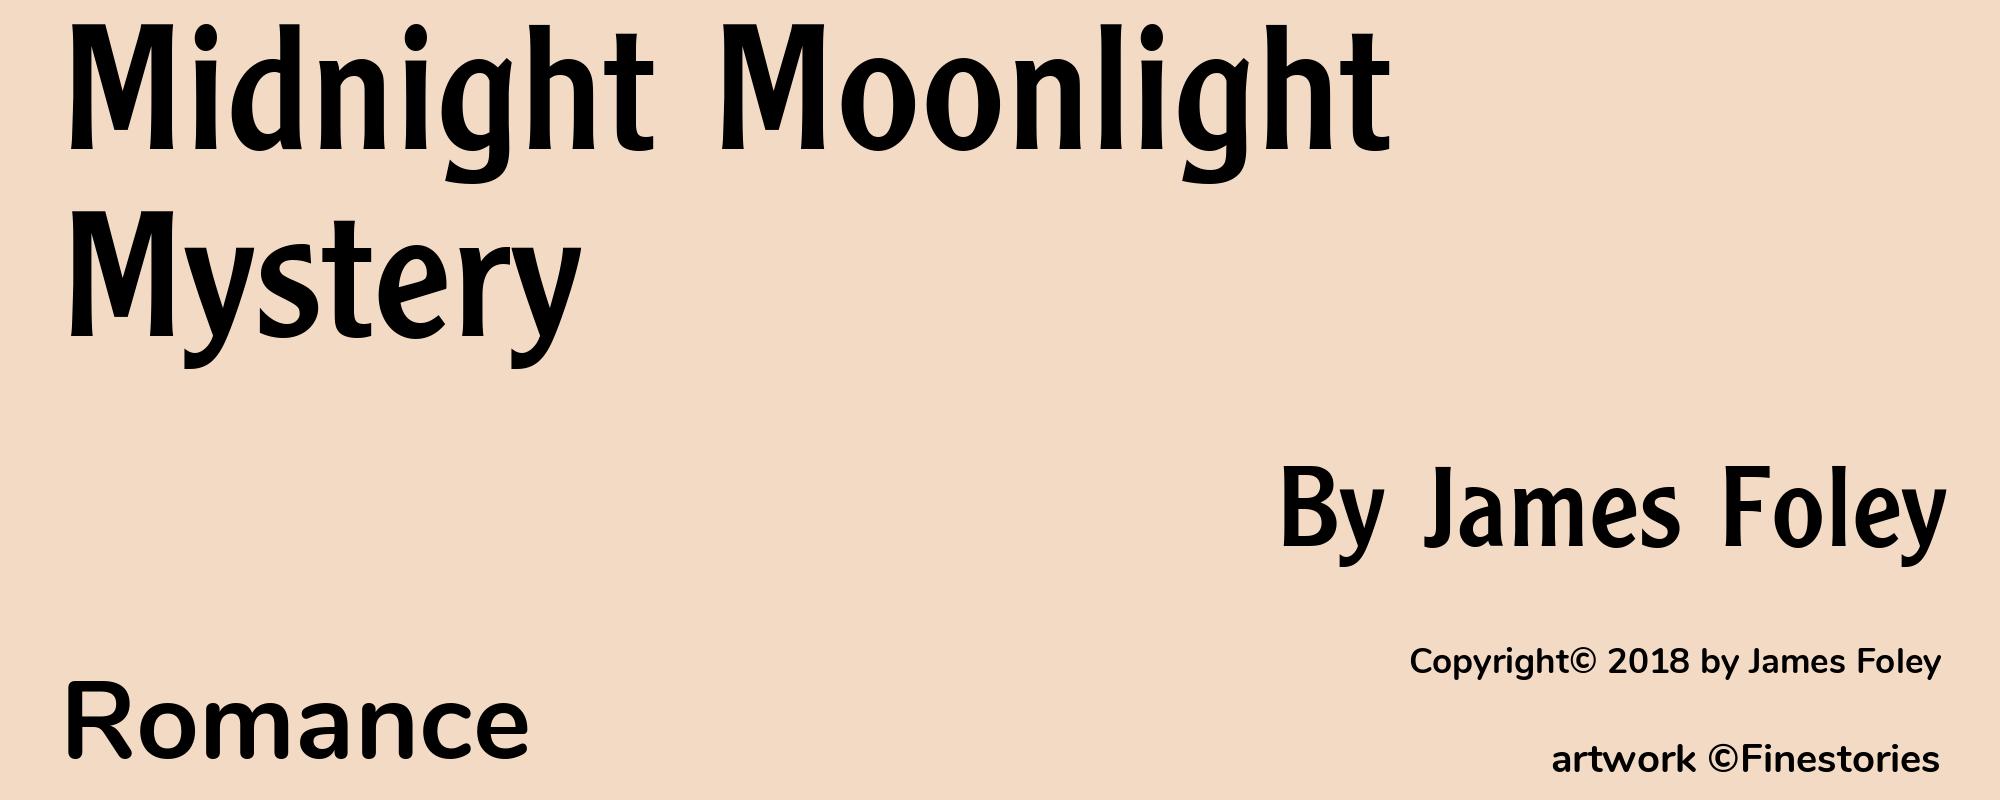 Midnight Moonlight Mystery - Cover